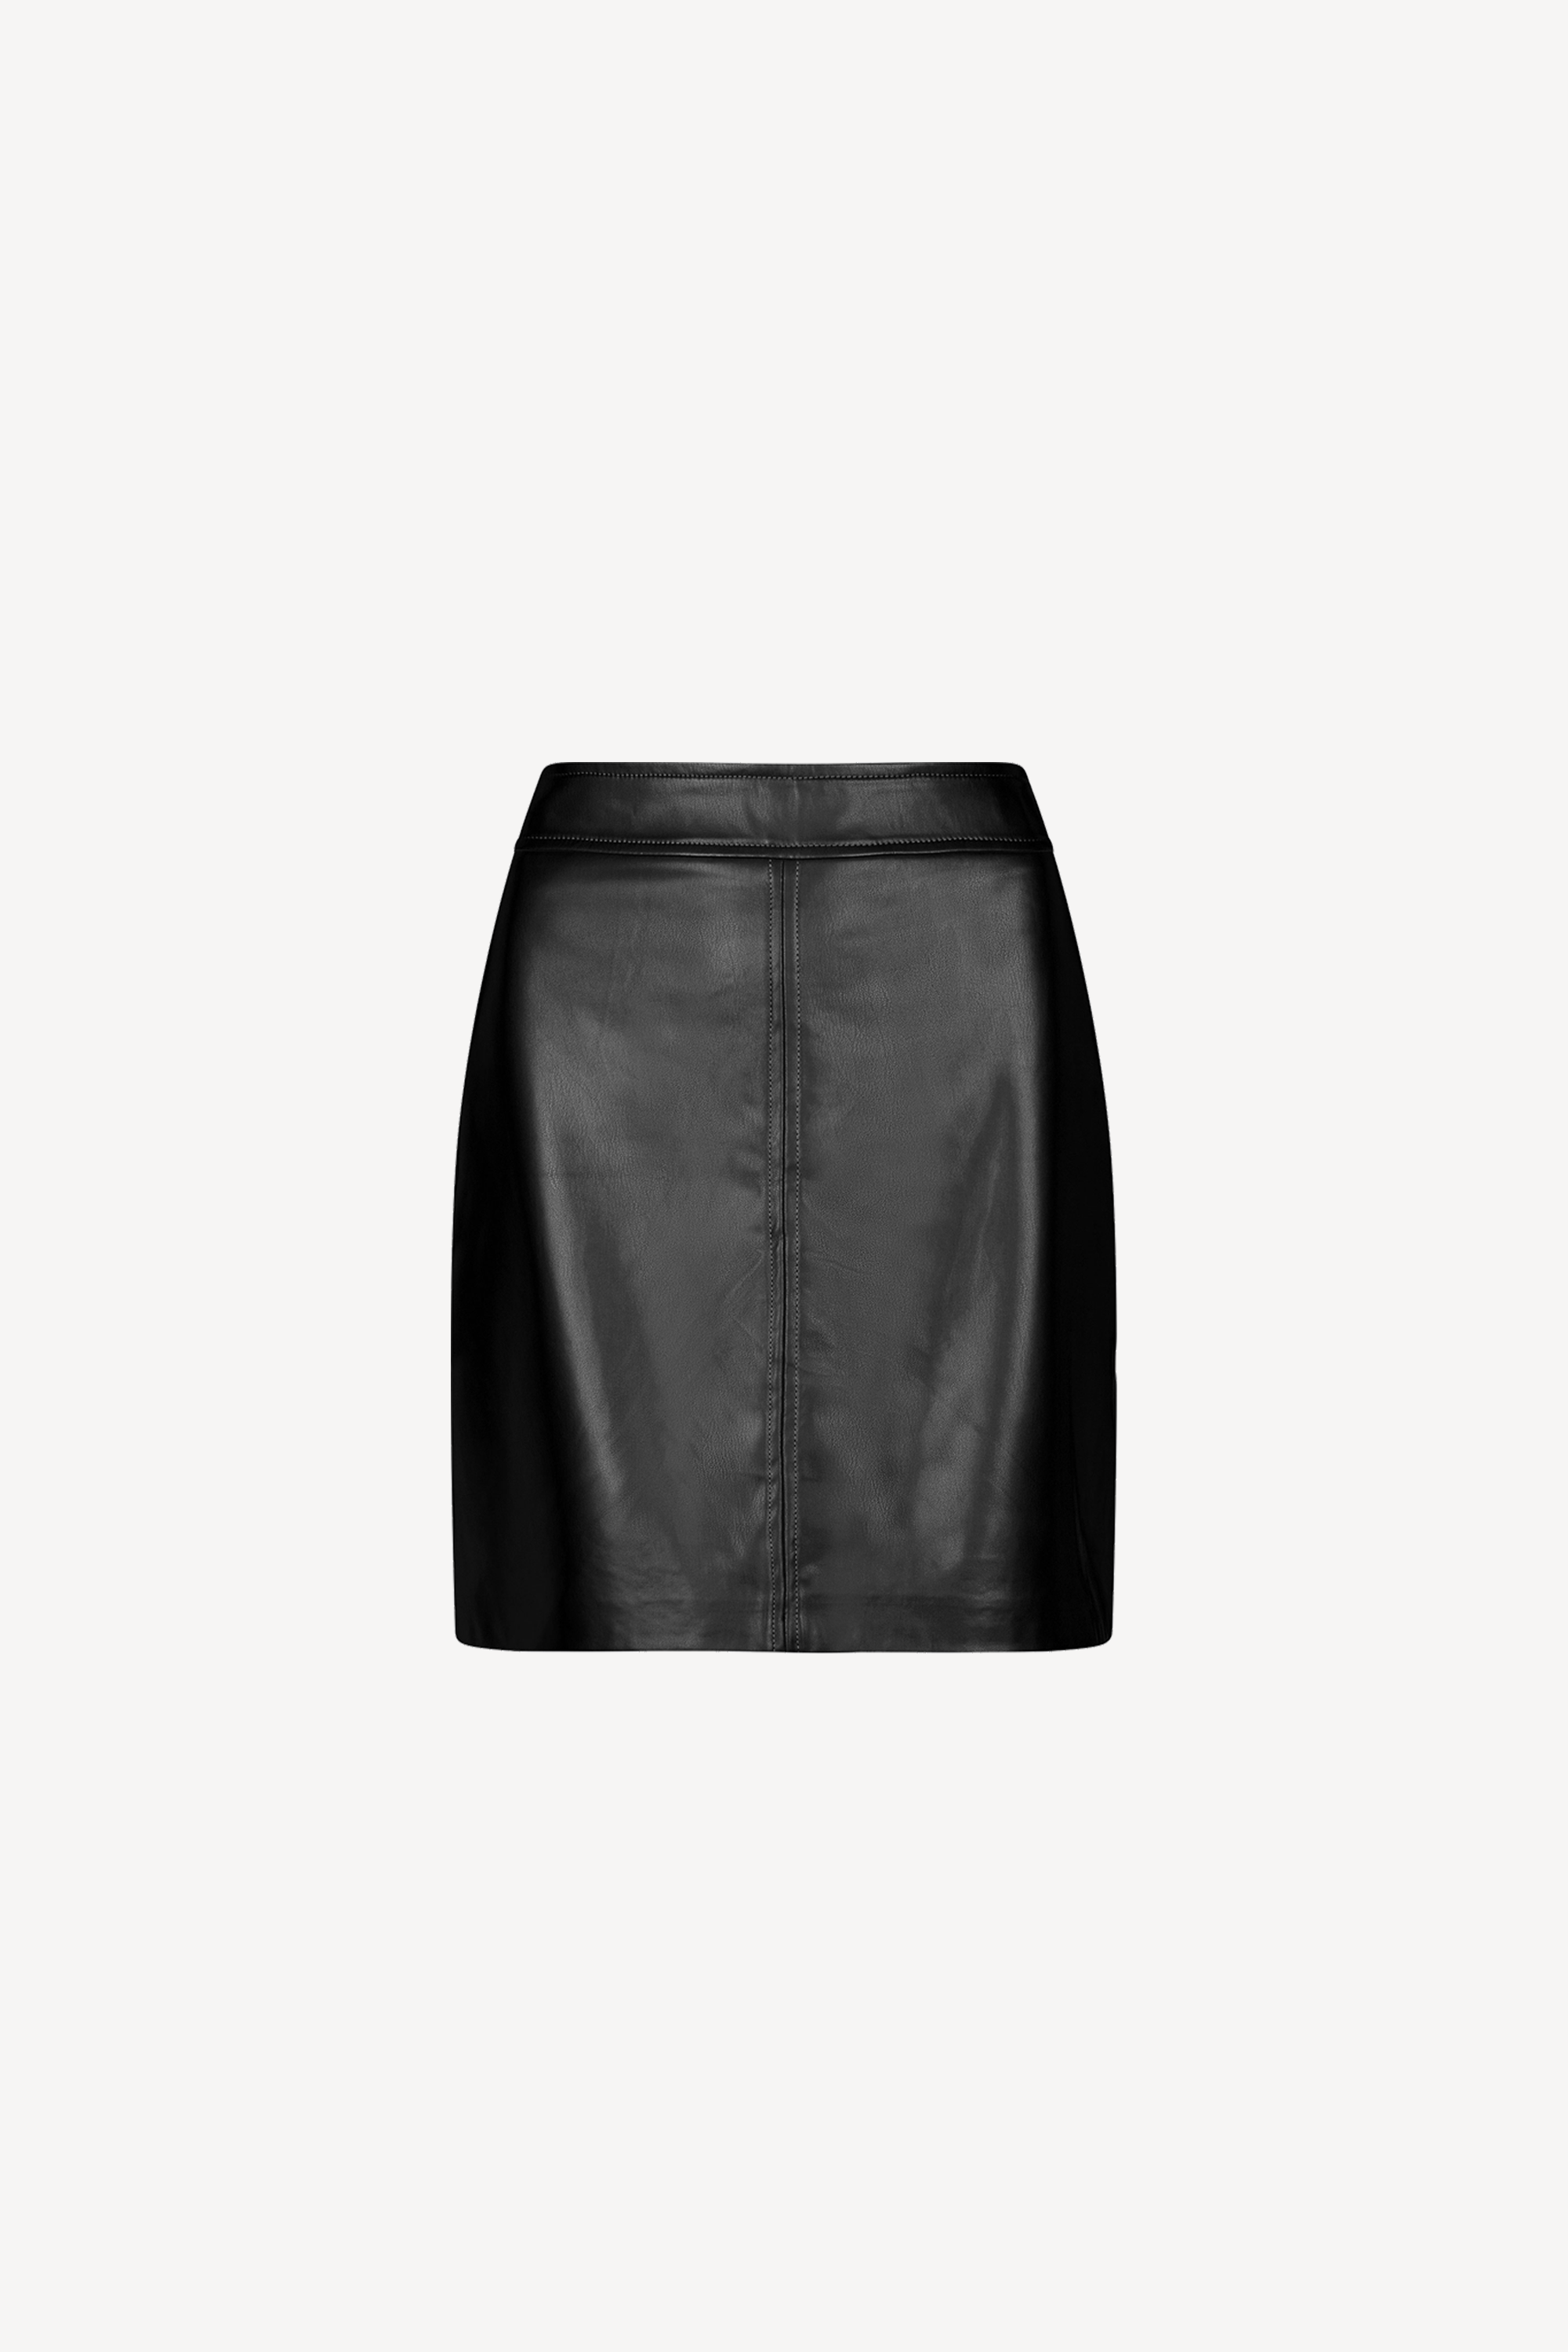 Chelsea Skirt Black